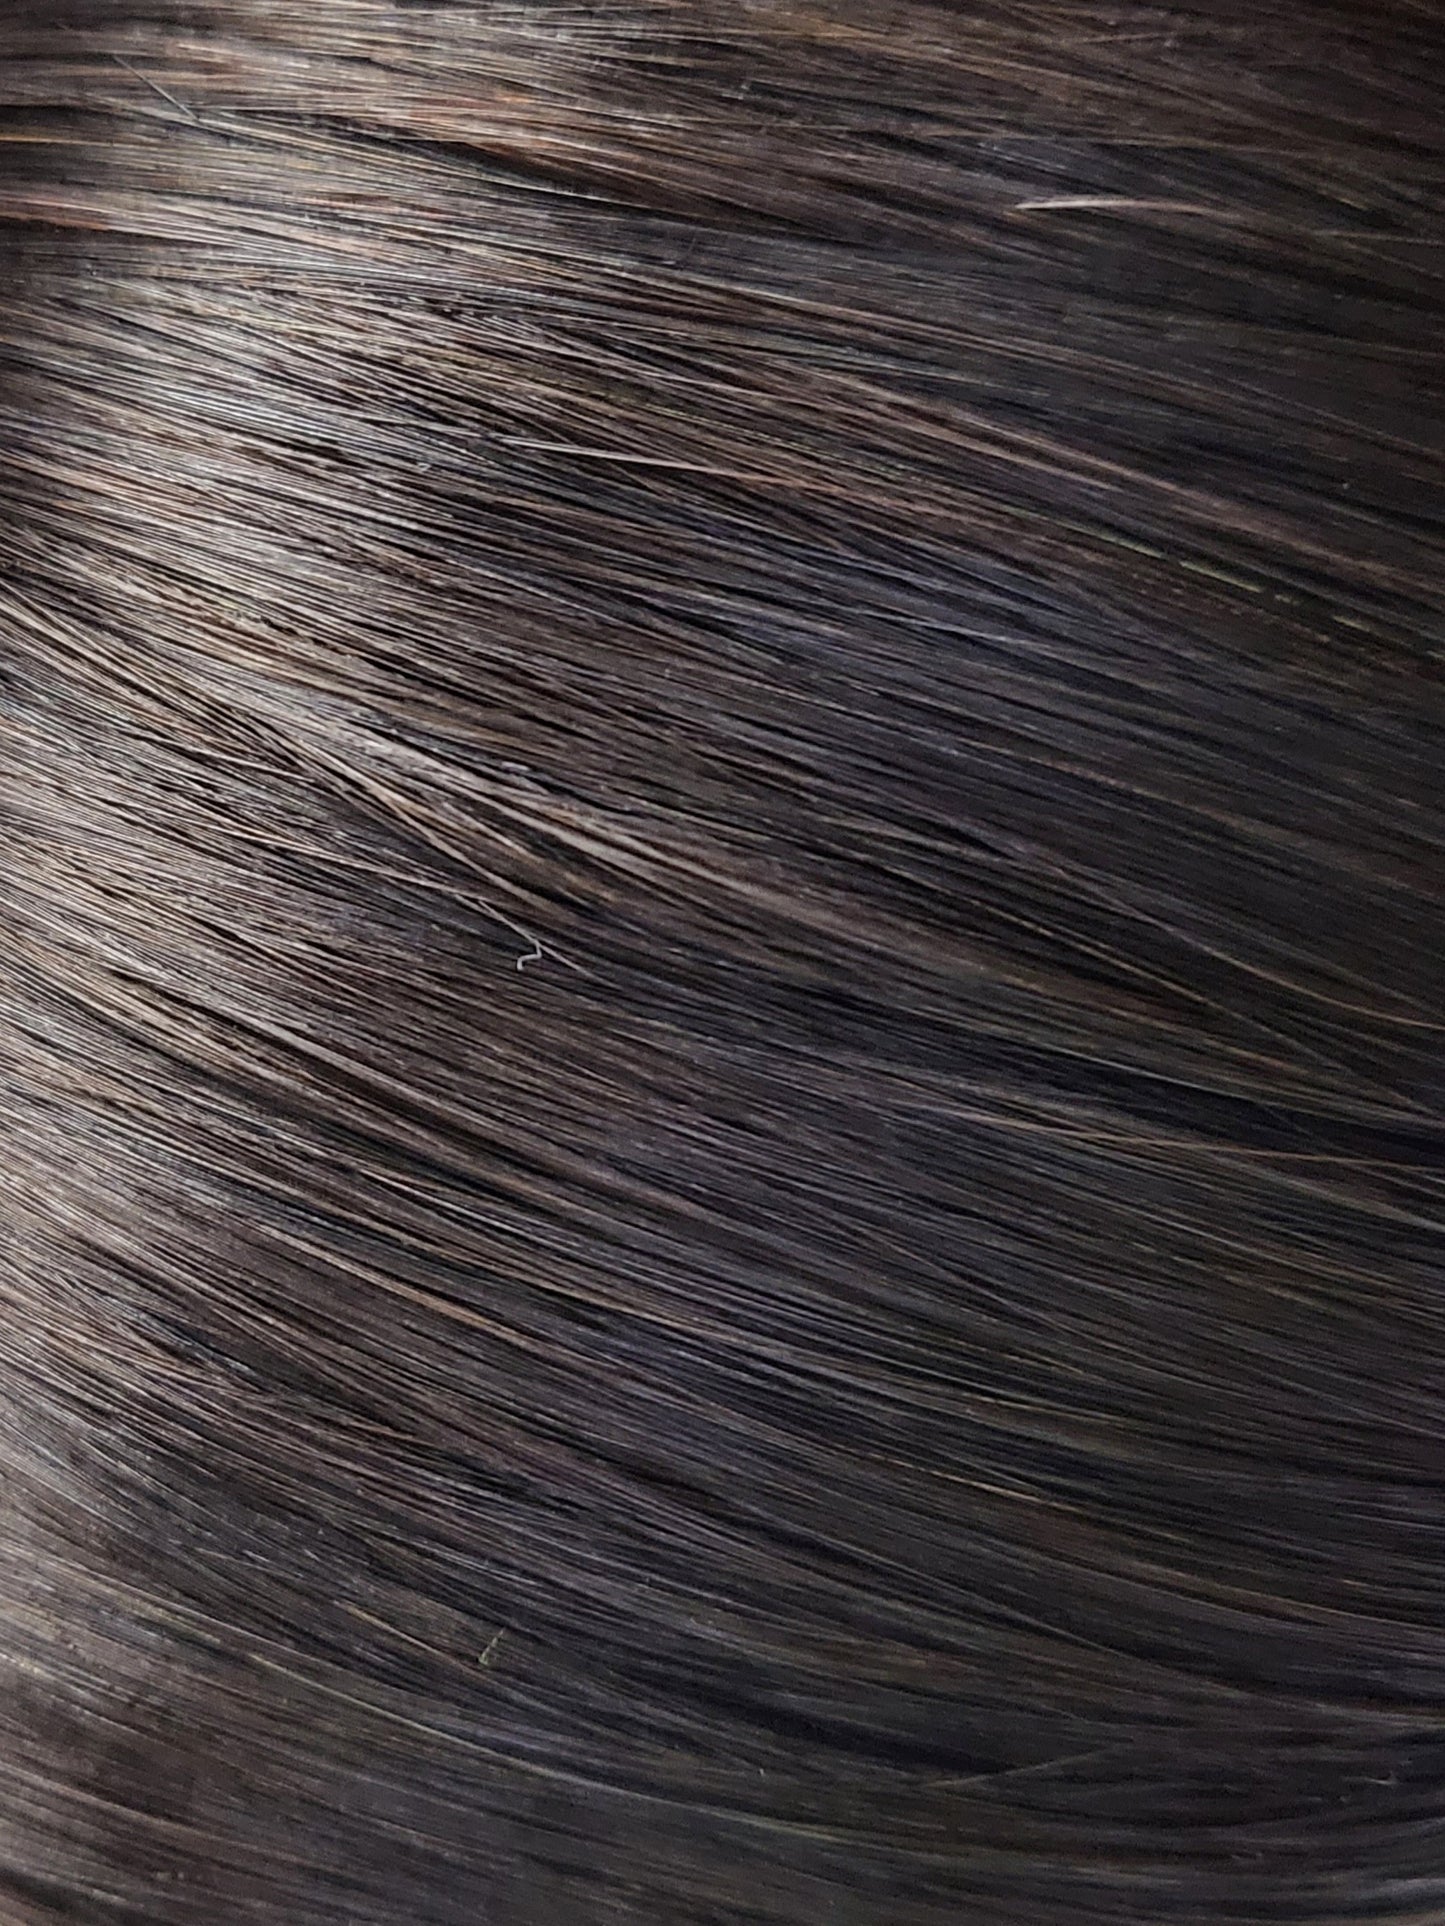 WEFT HAIR-1b-Darkest brown 22 inch